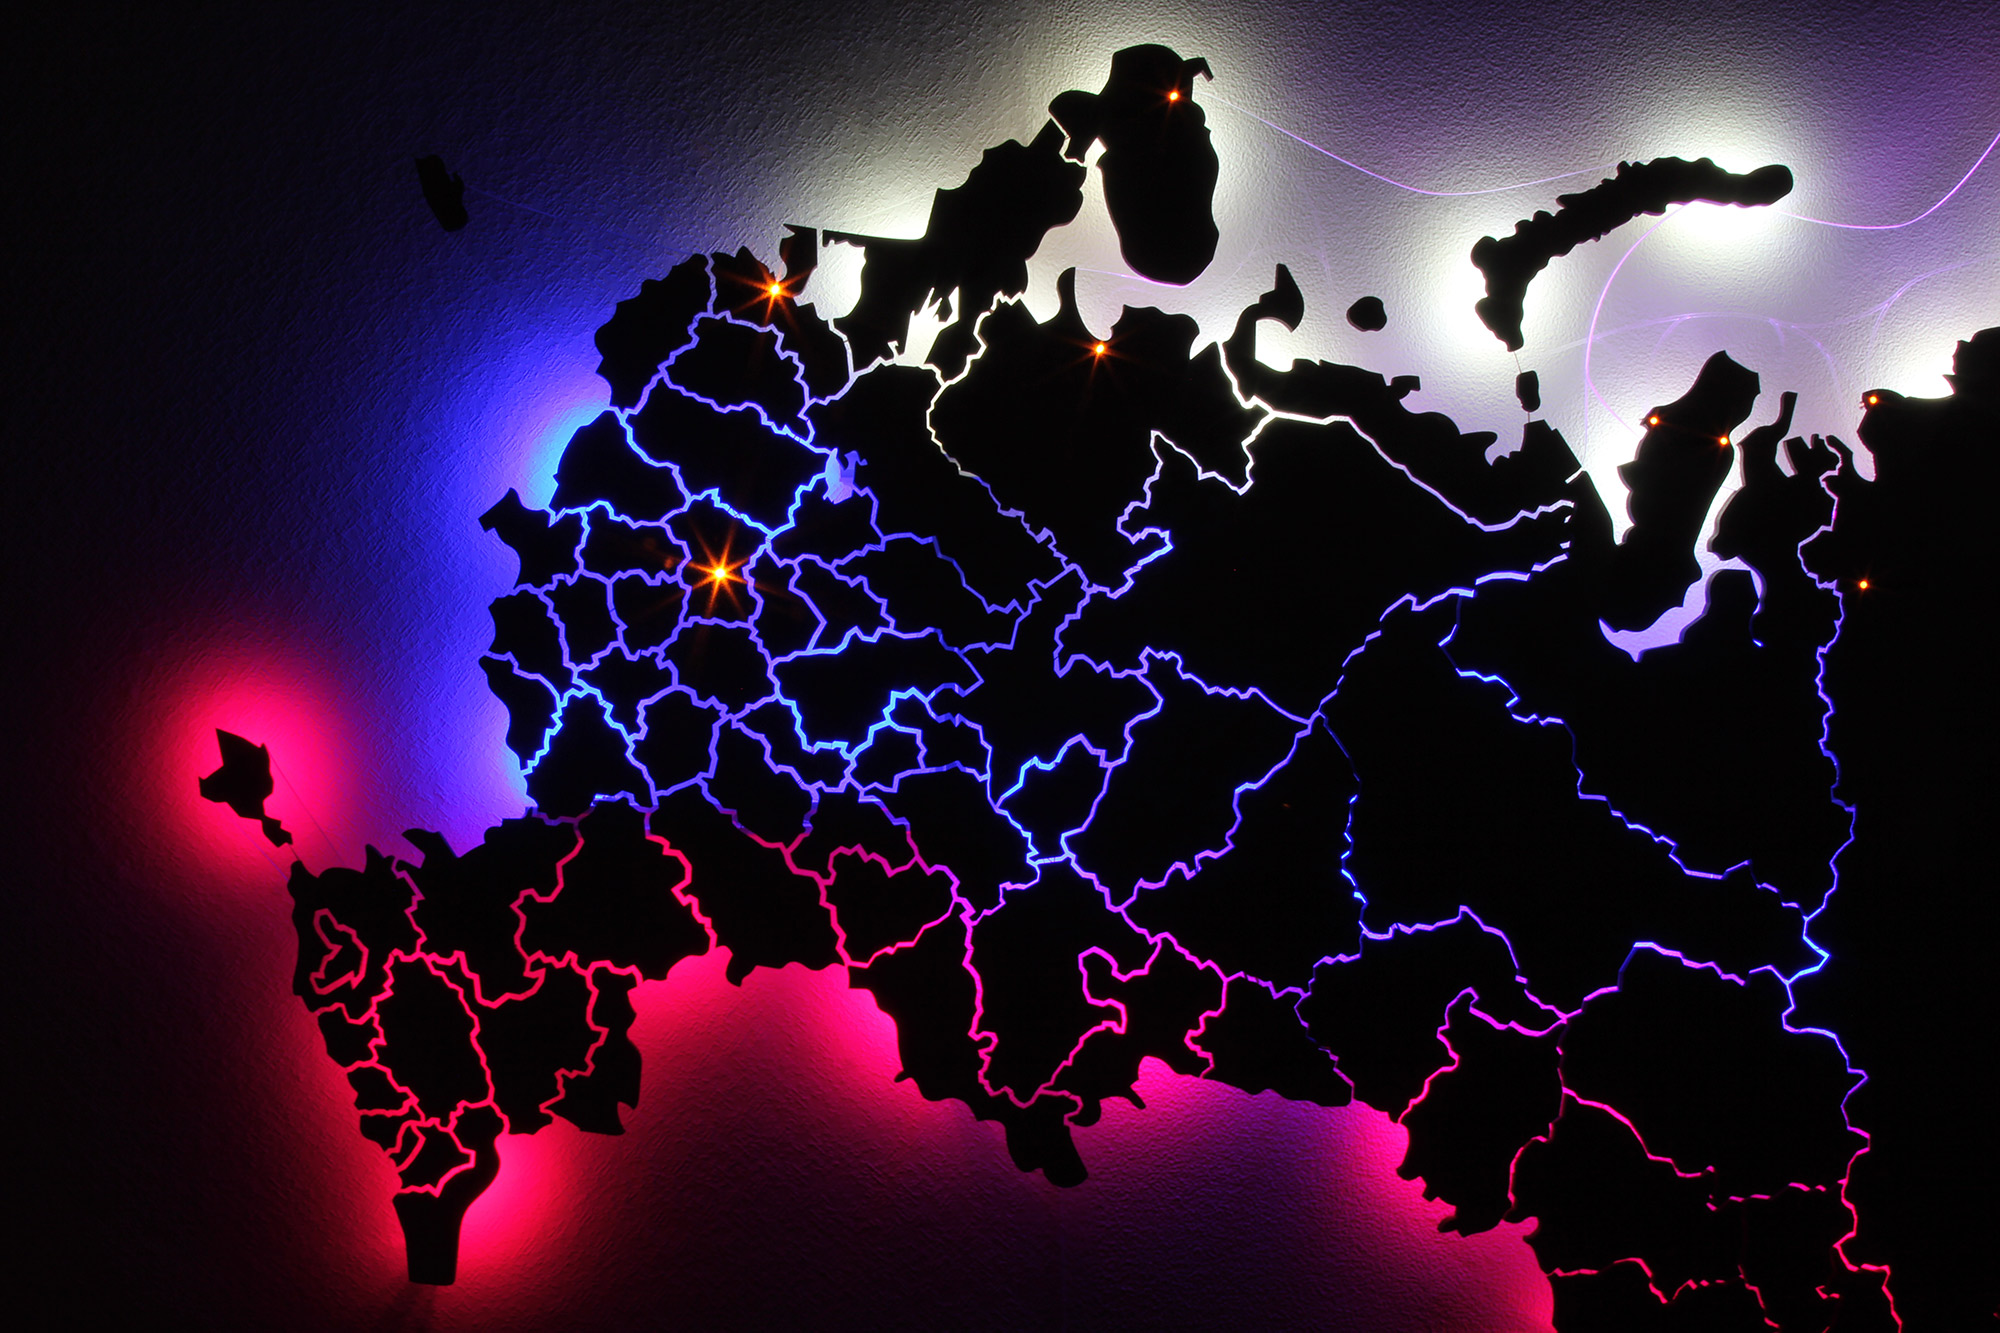 Card russia. Карта России. Карта России красивая. Европейская часть России. Карта России черная.